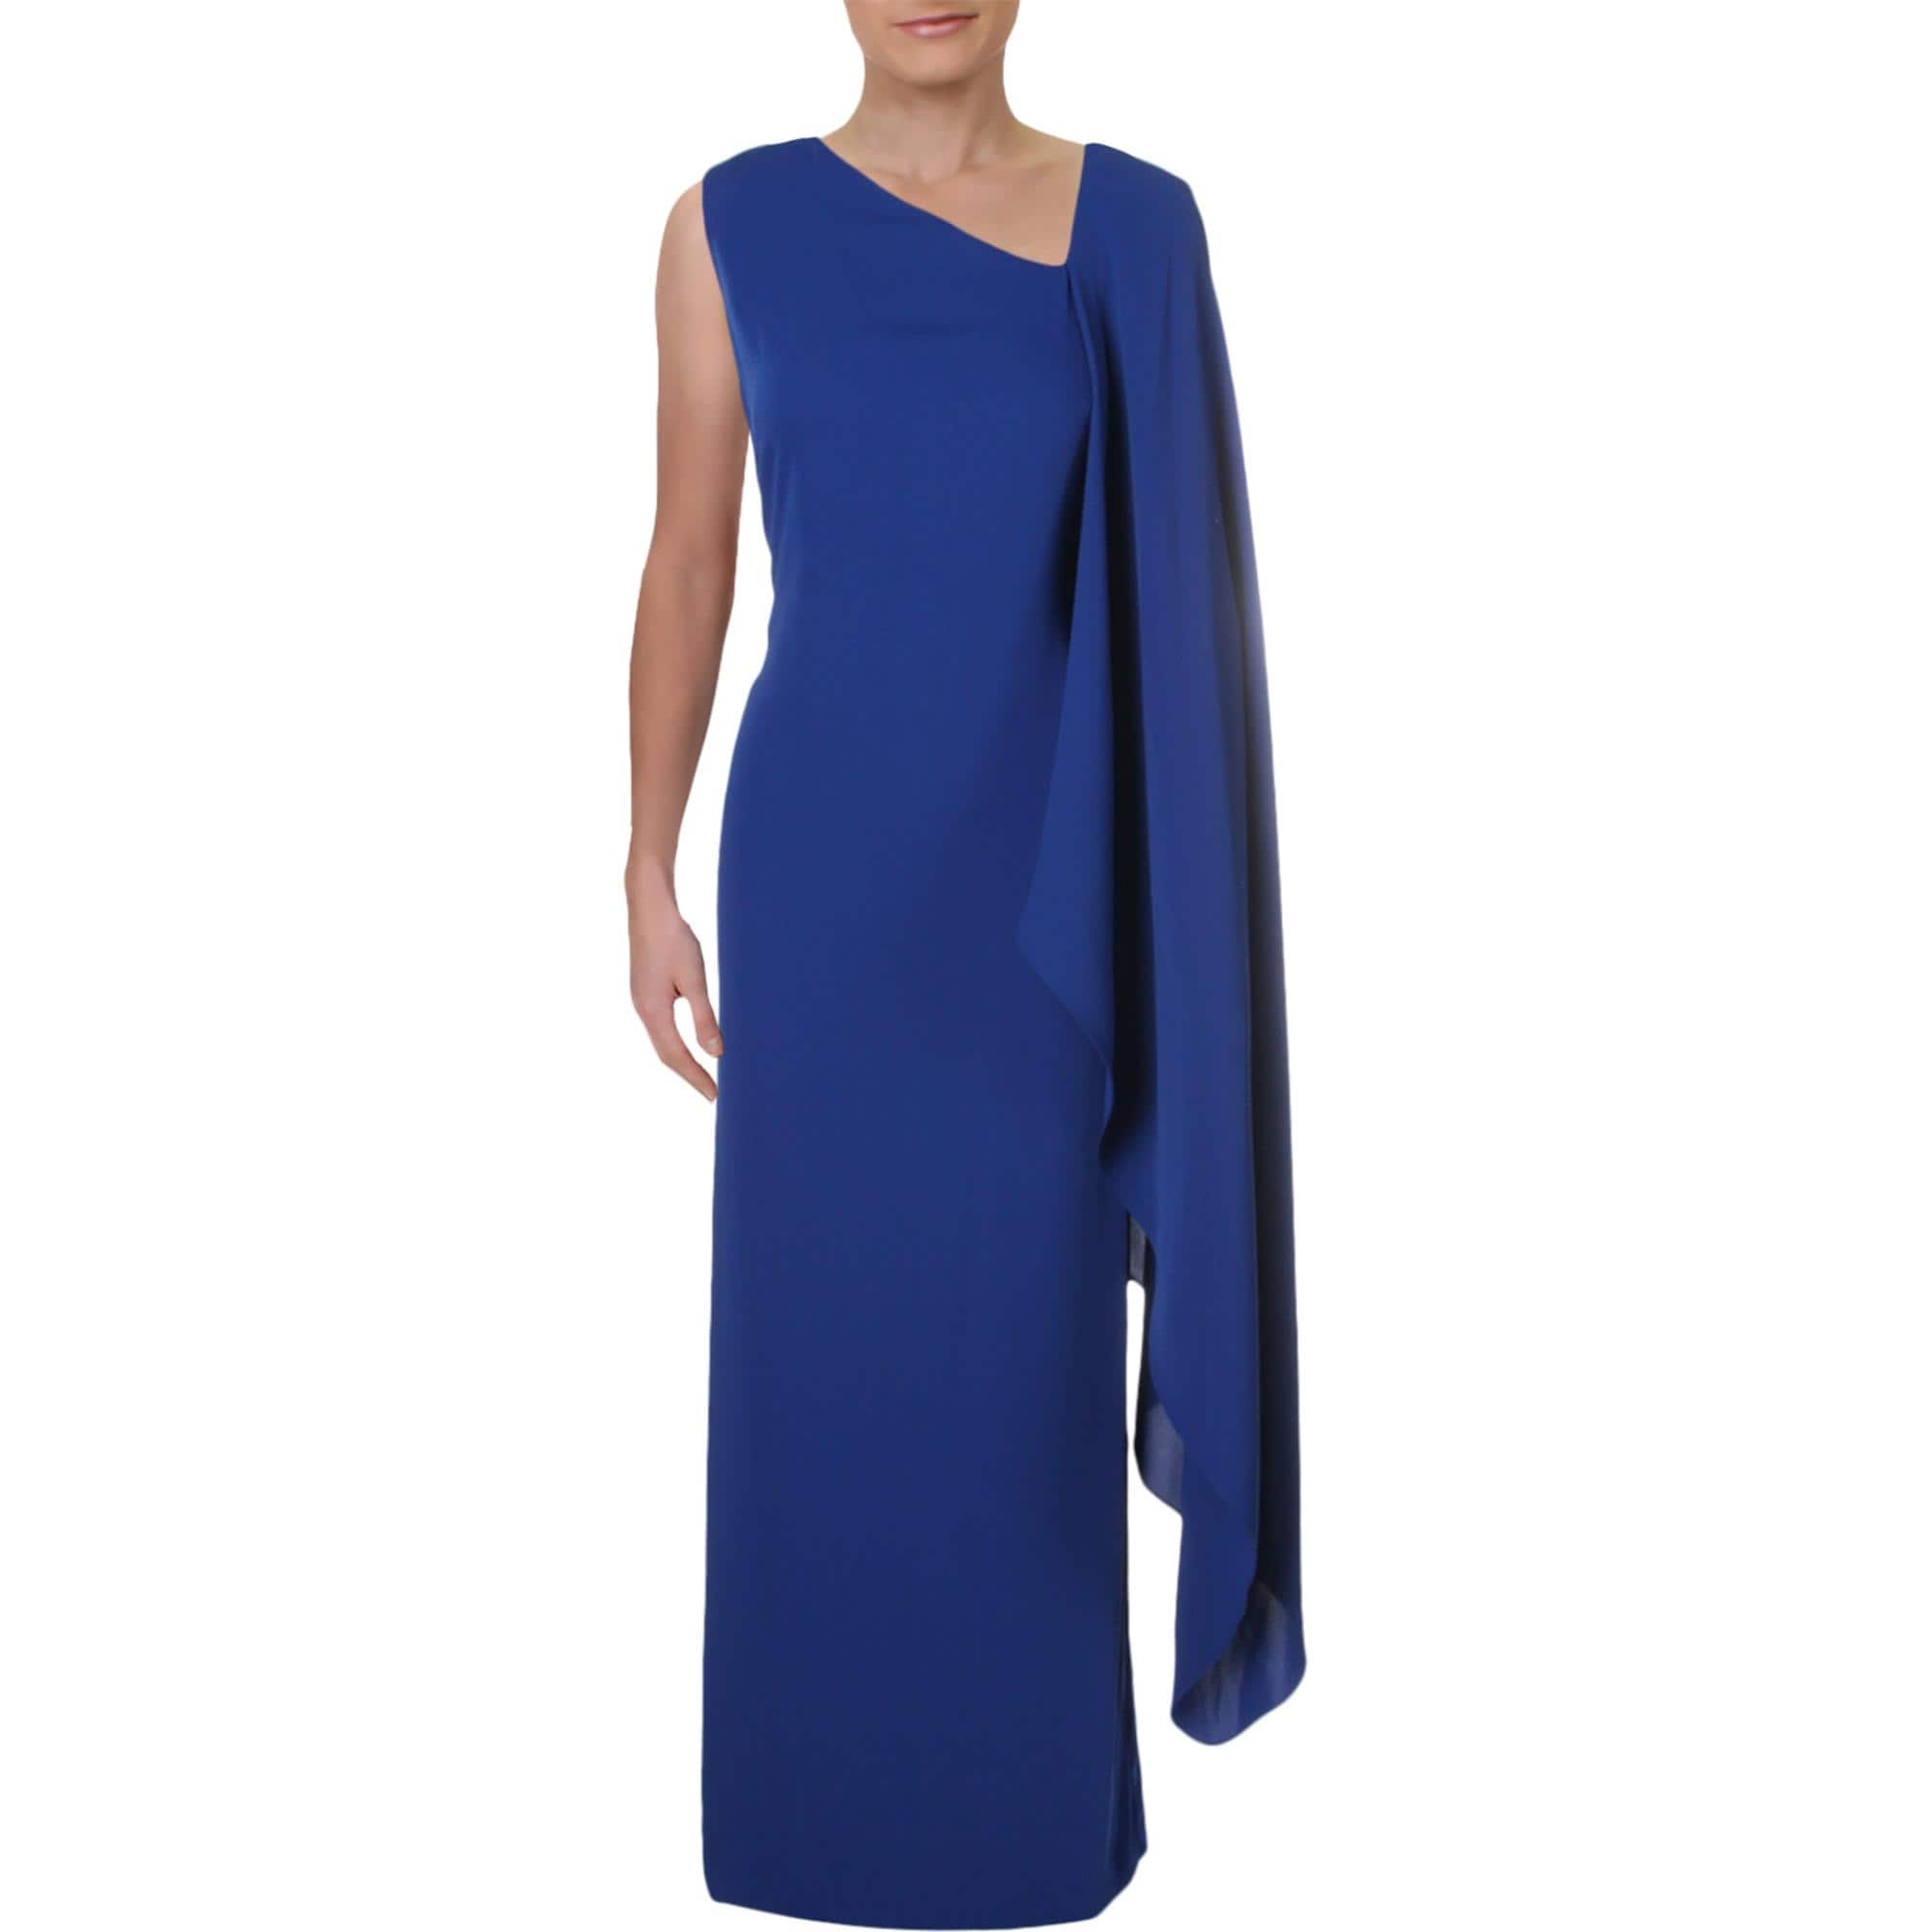 ralph lauren cape overlay dress